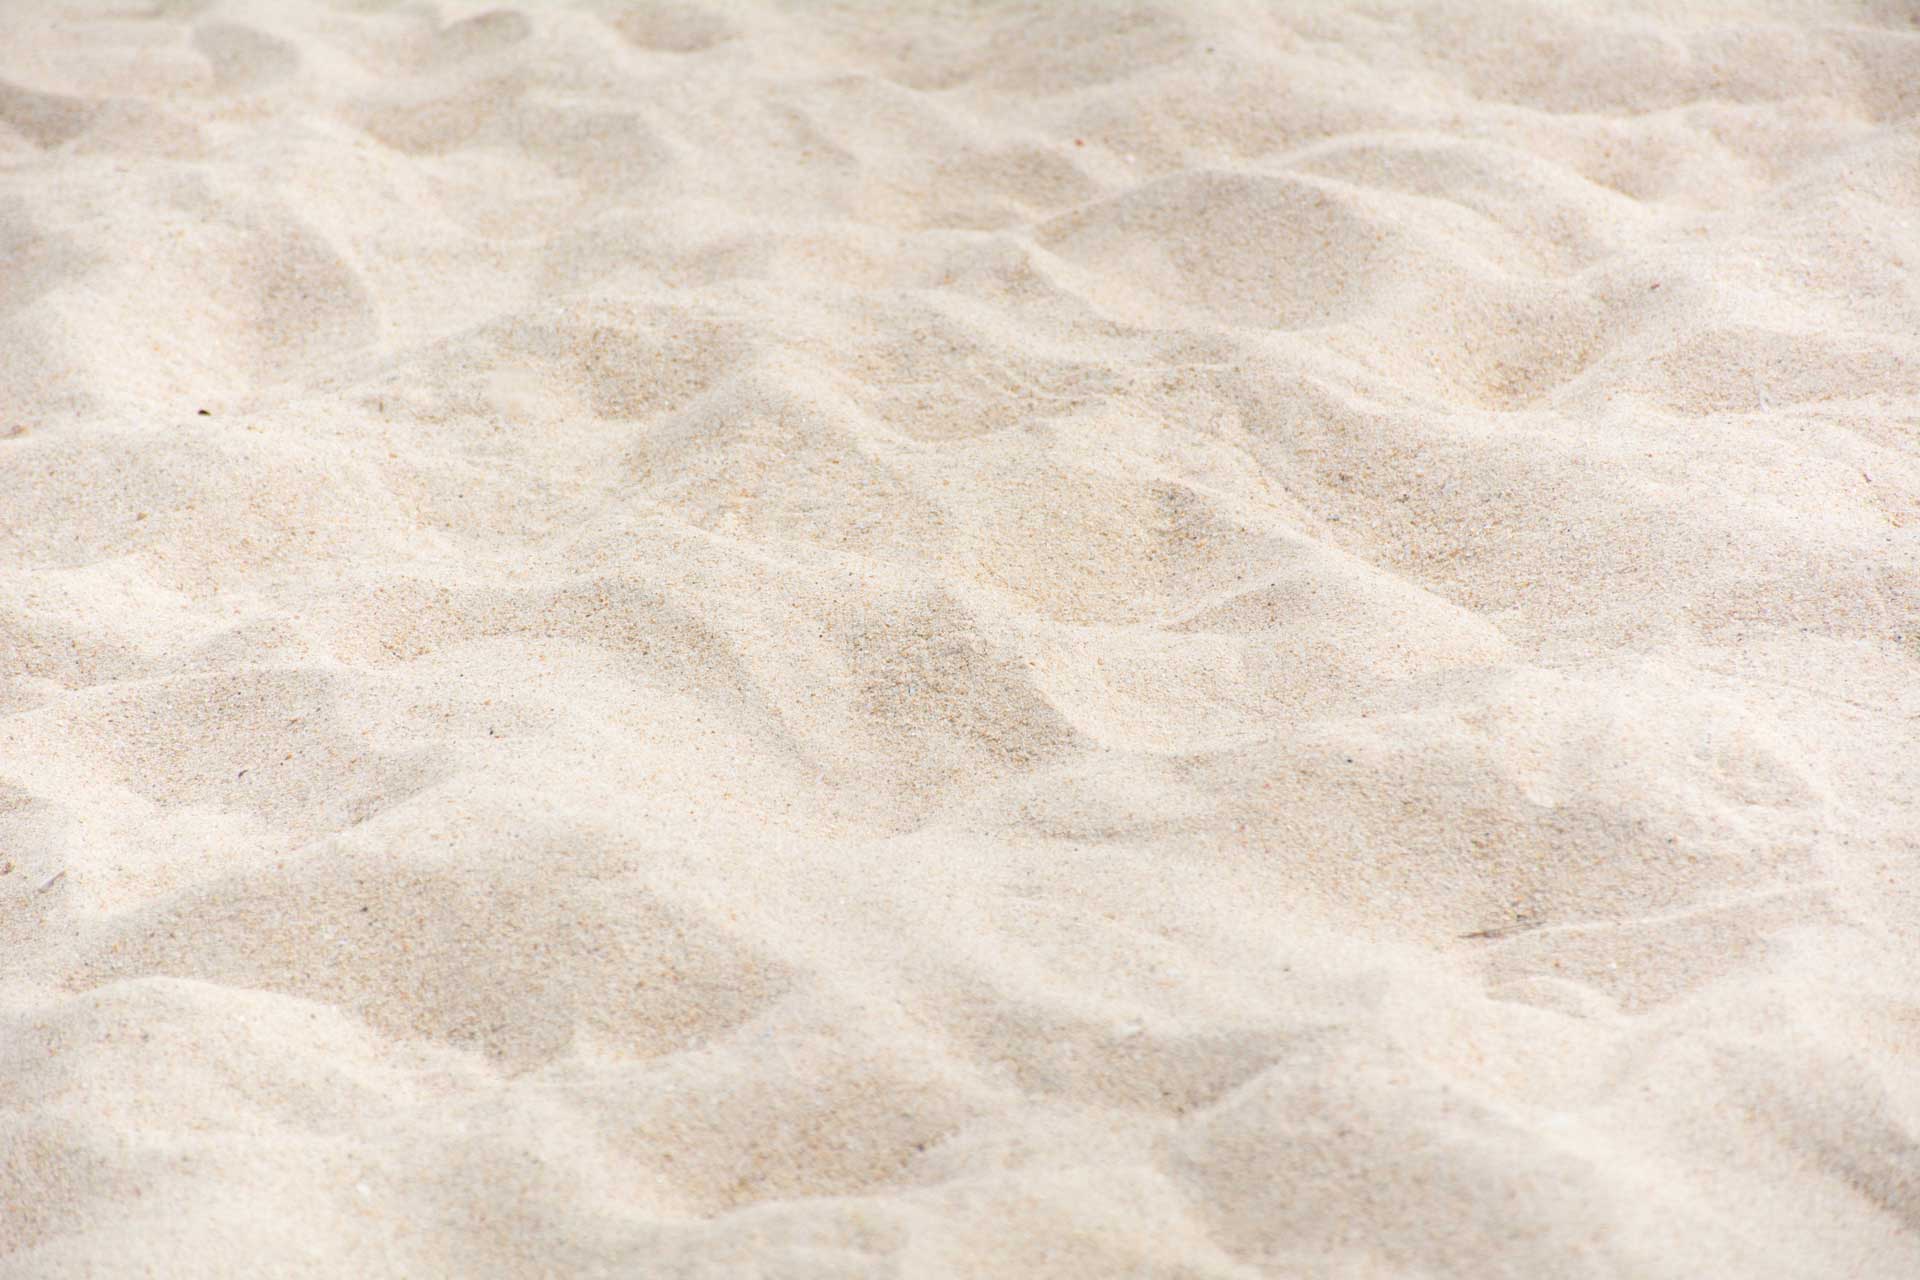 Silica Sand for Beach in Dubai -UAE